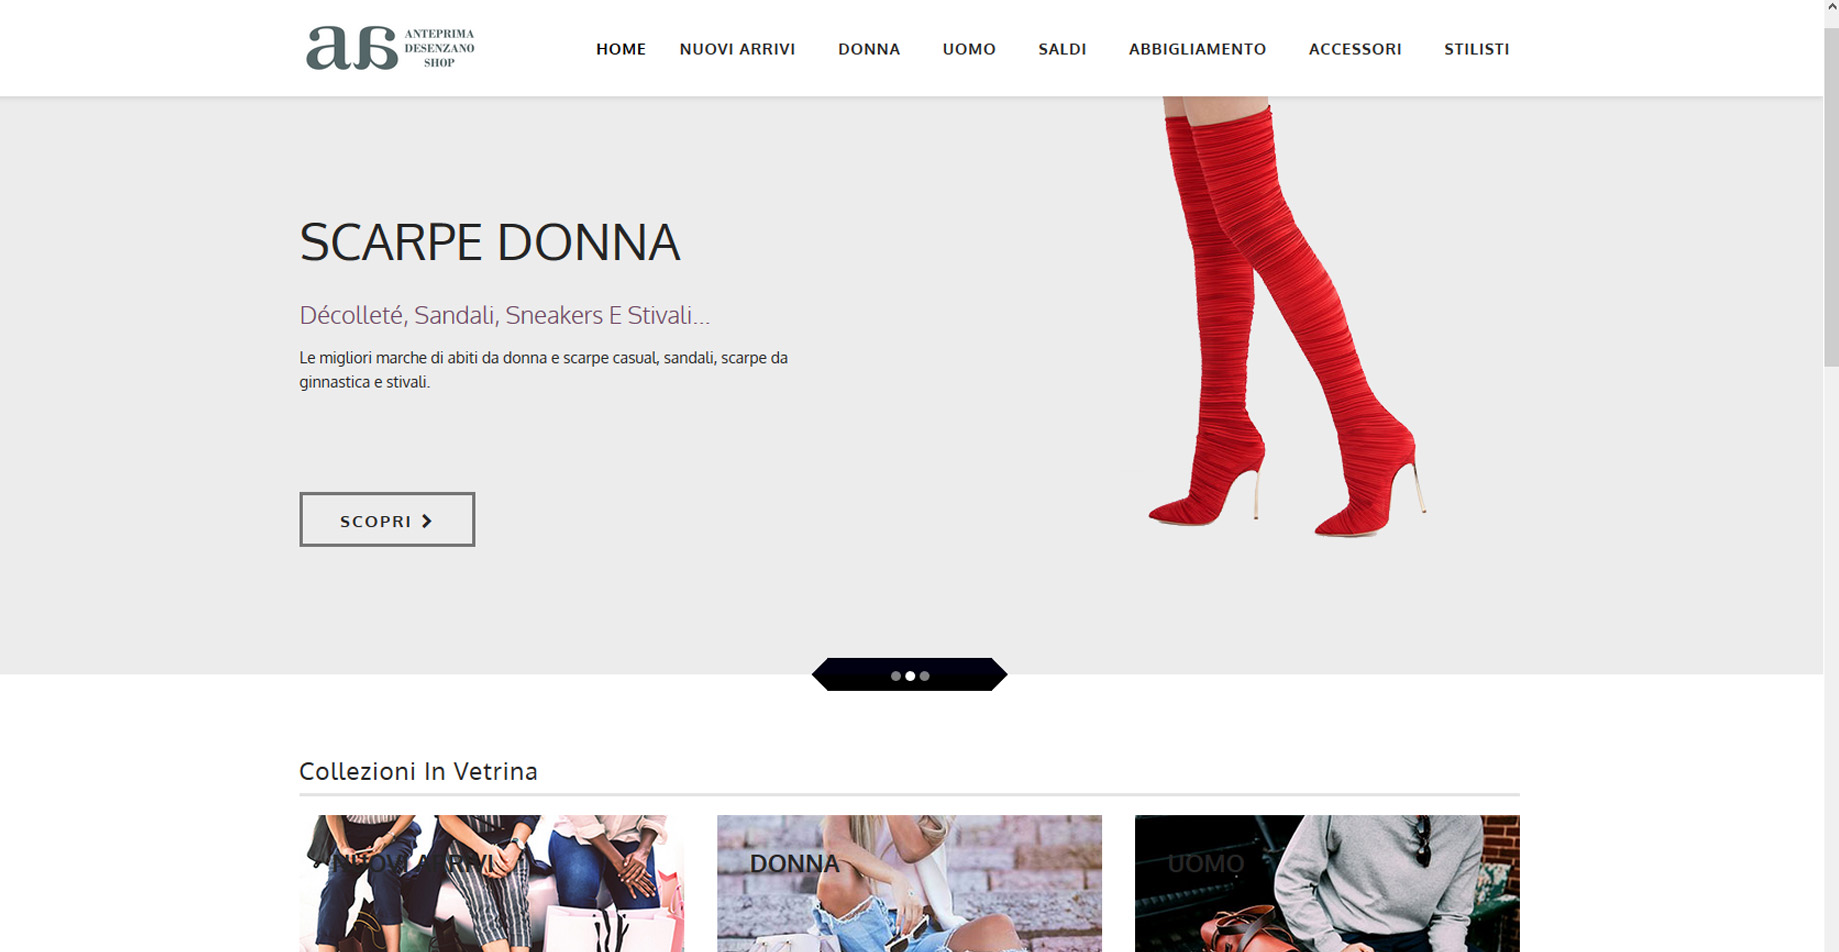 immagine del sito Anteprima Desenzano Shop